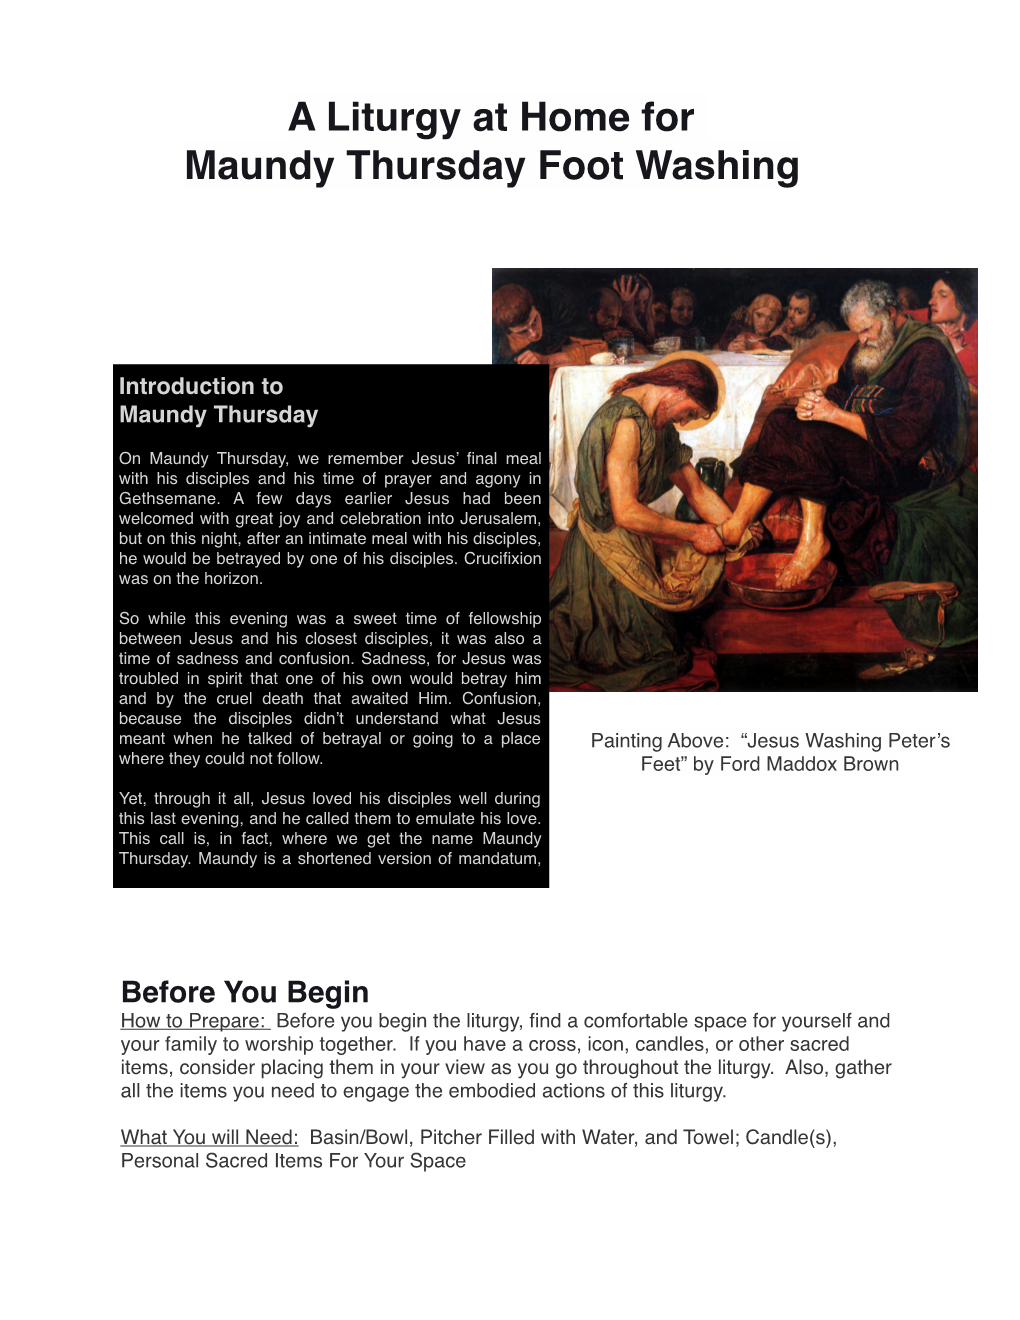 Maundy Thursday Foot Washing